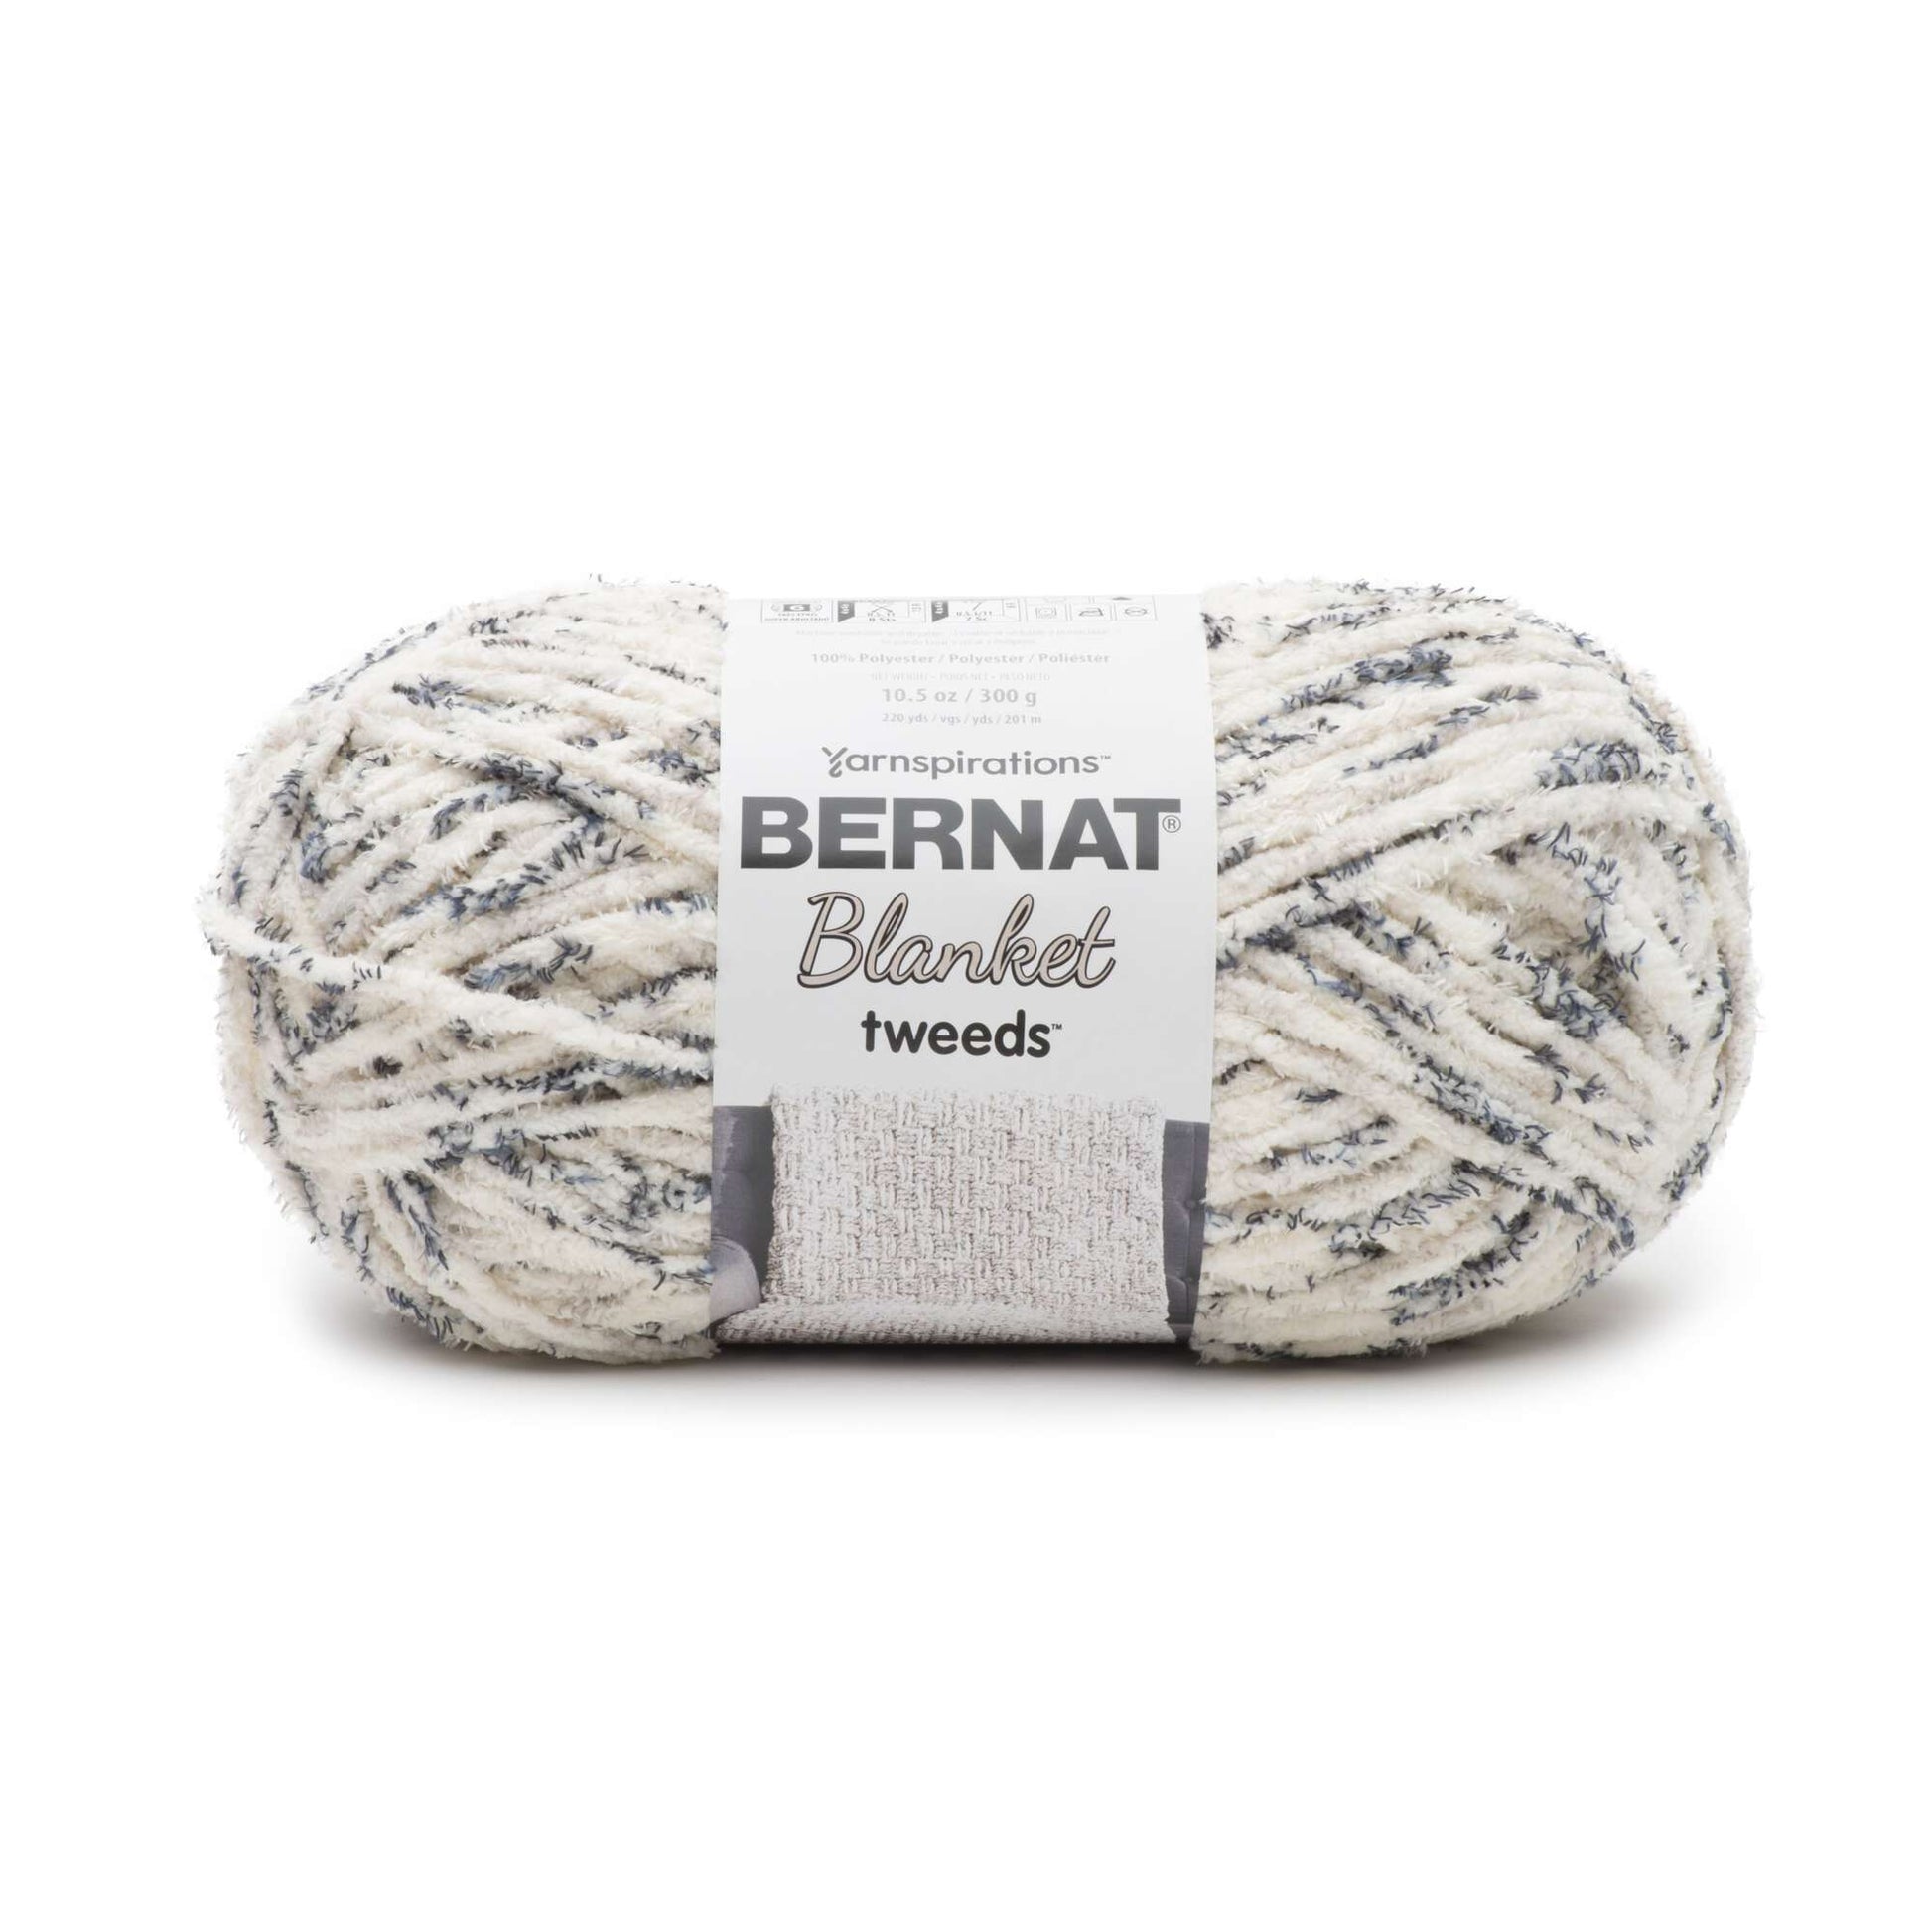 Bernat Blanket Tweeds Yarn (300g/10.5oz)